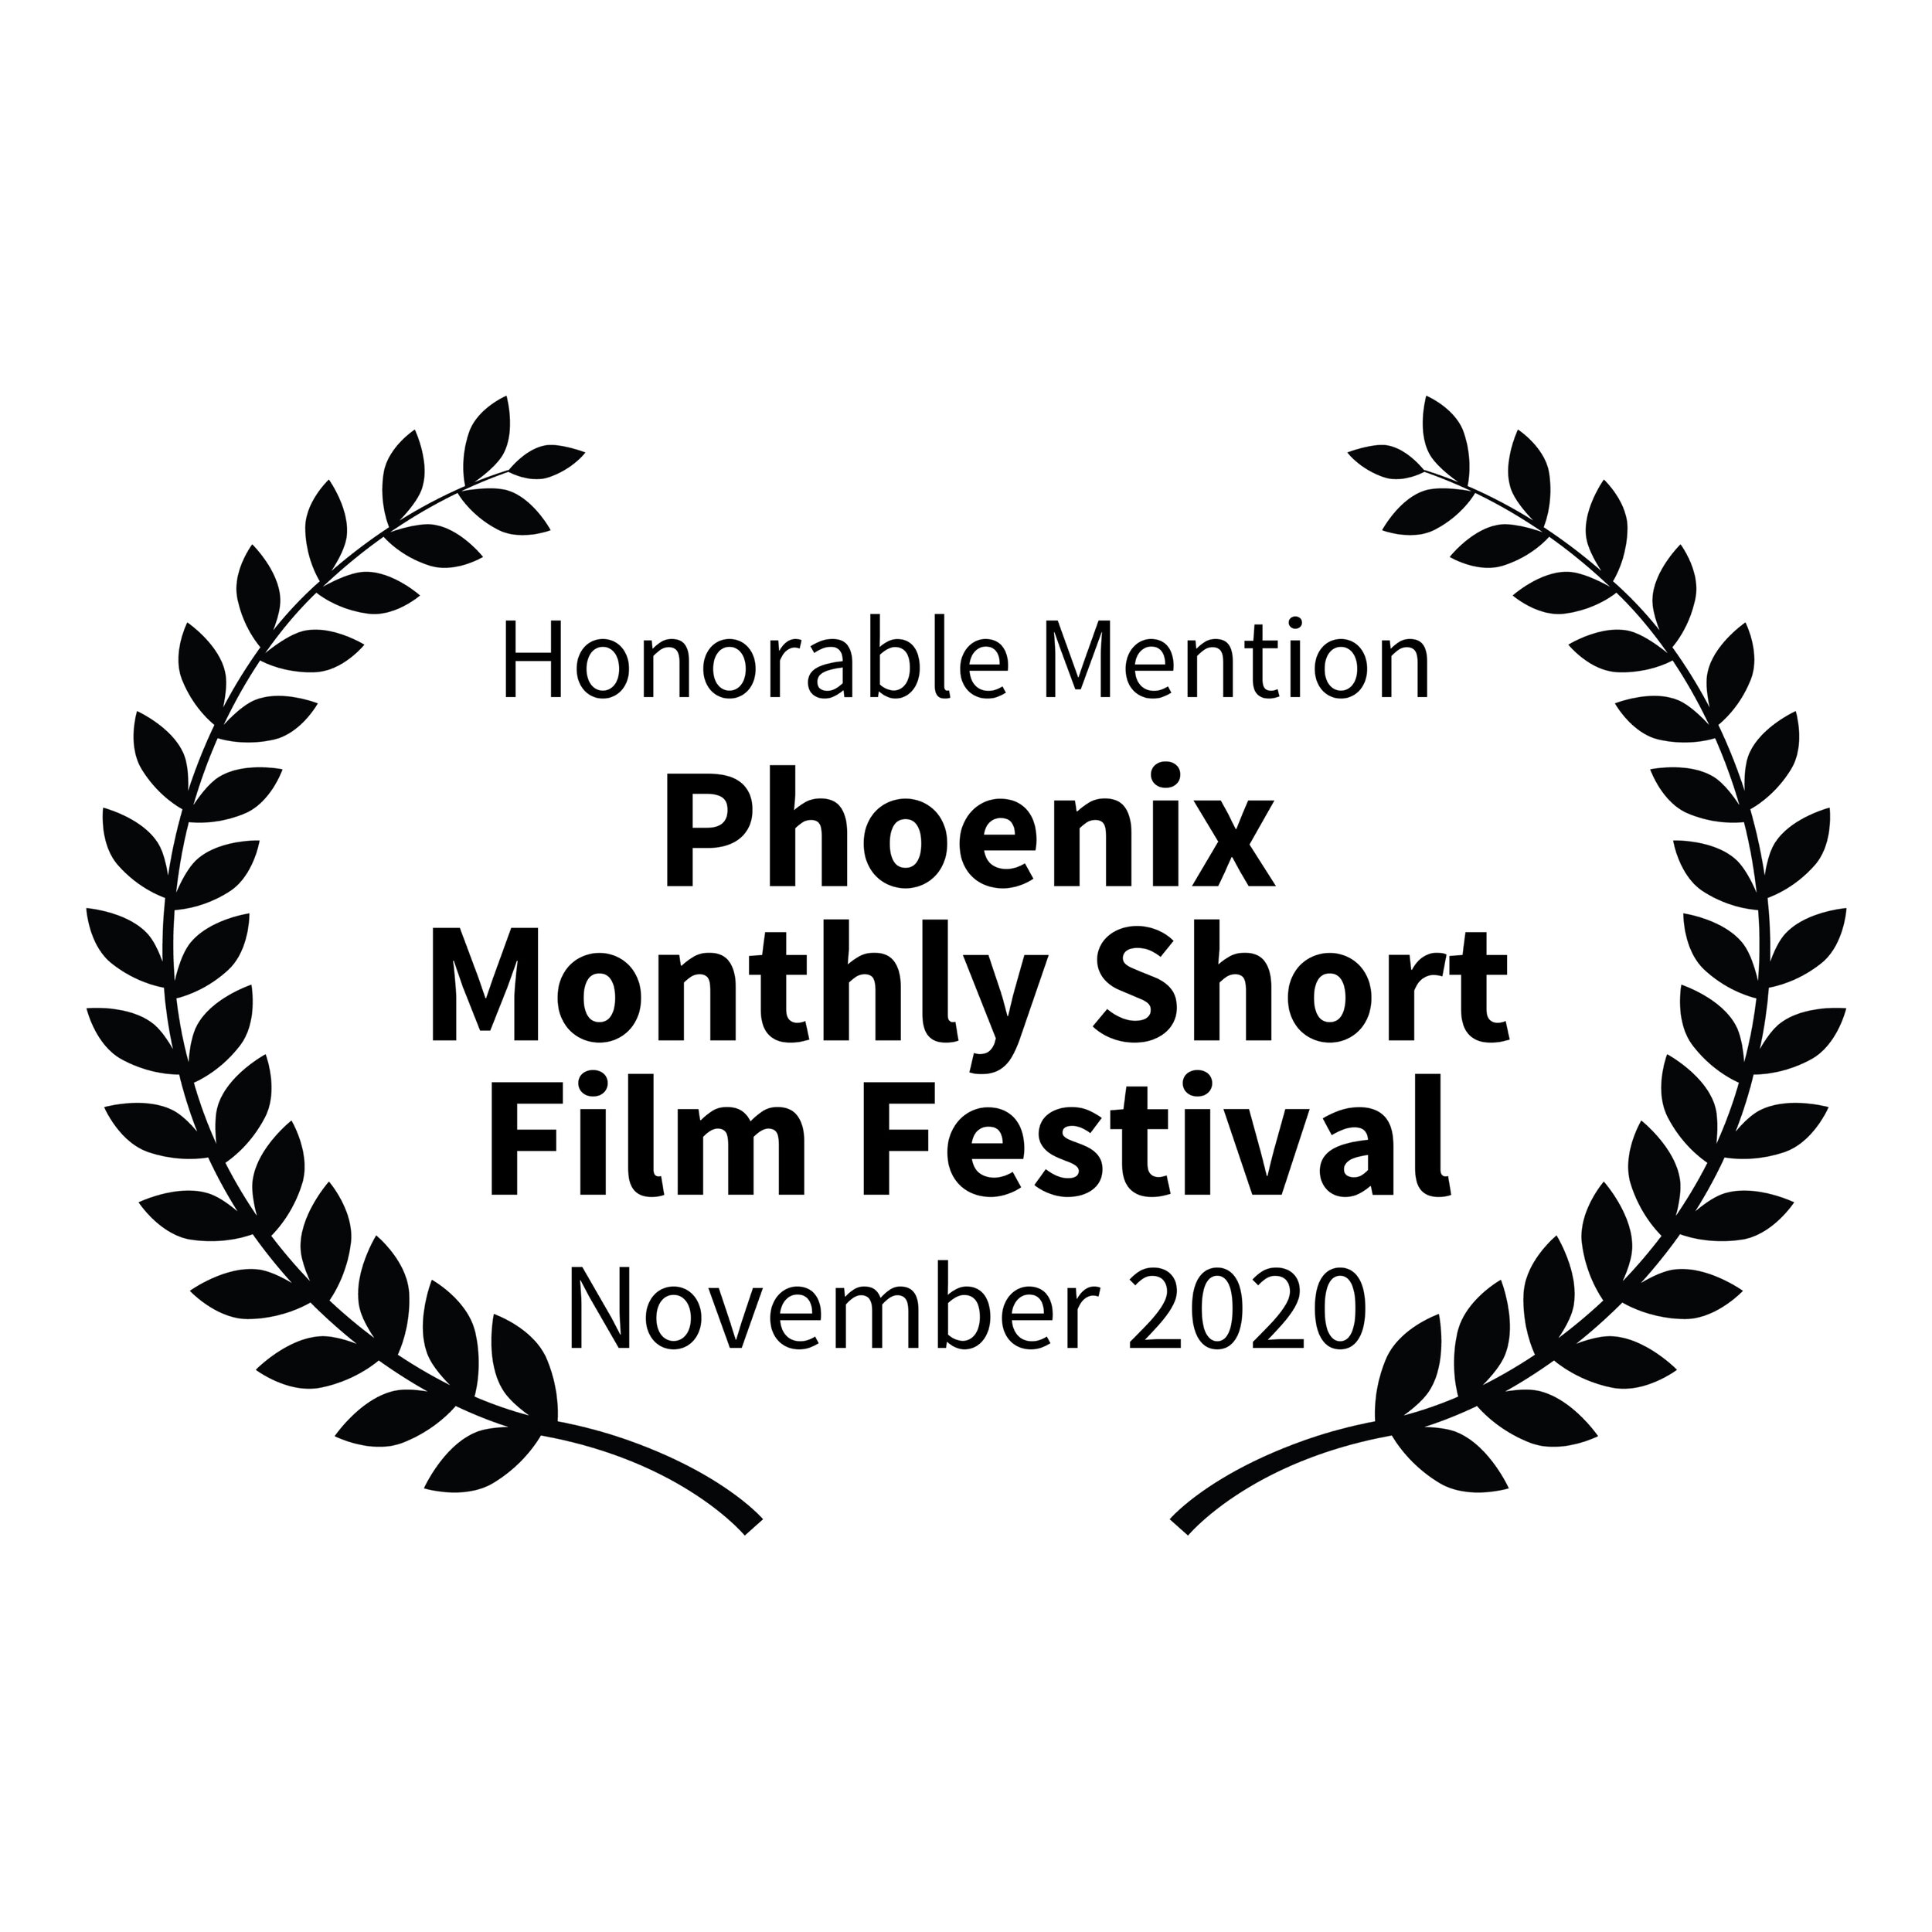 HonorableMention-PhoenixMonthlyShortFilmFestival-November2020-SQUARE.jpg